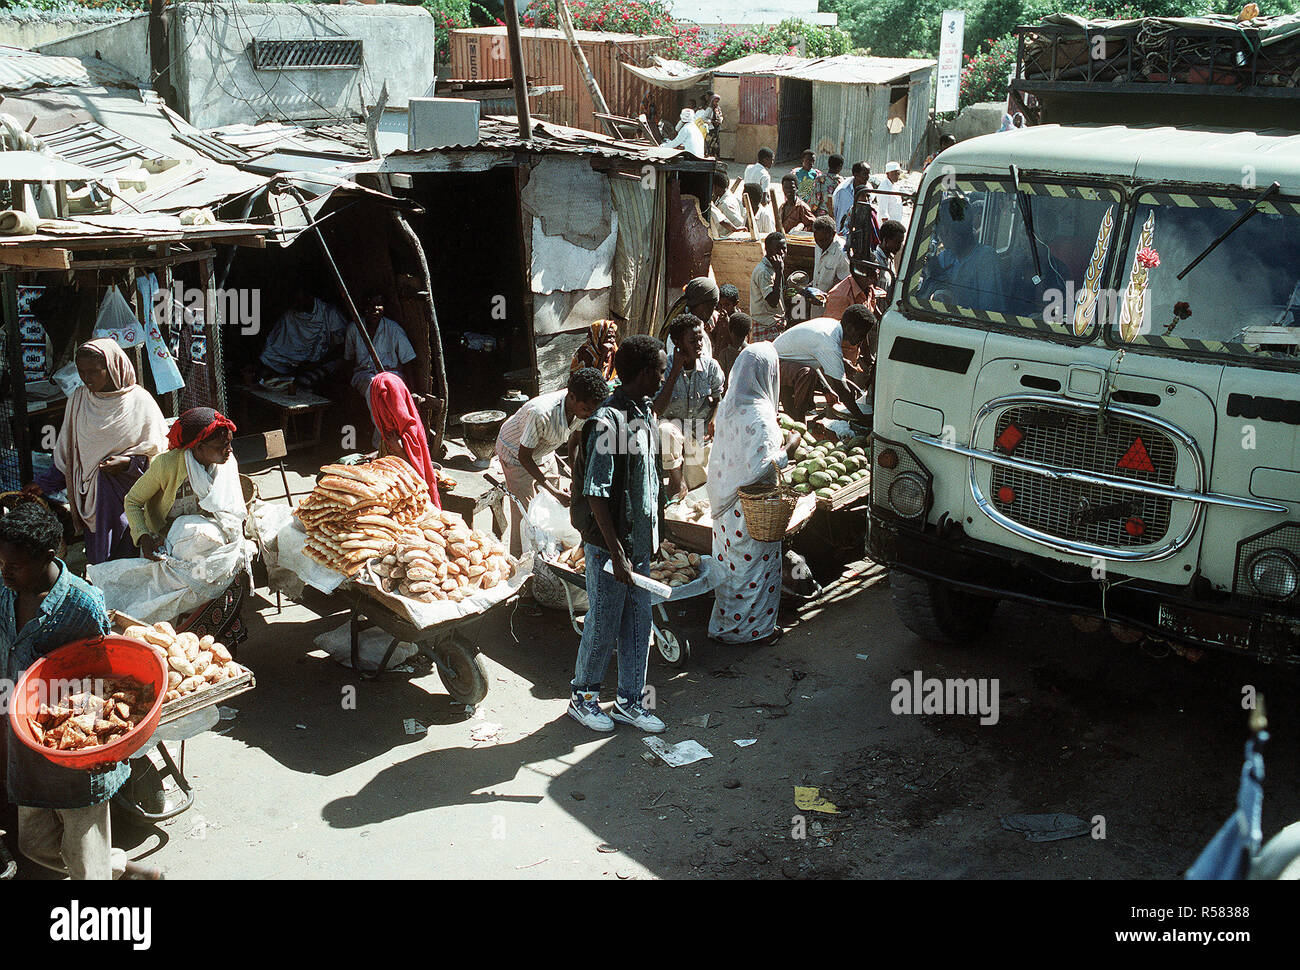 1992 fournisseurs - les plis de leurs produits sur une rue bondée pendant l'effort de secours multinationales l'Opération Restore Hope. Mogadiscio (Somalie) Banque D'Images